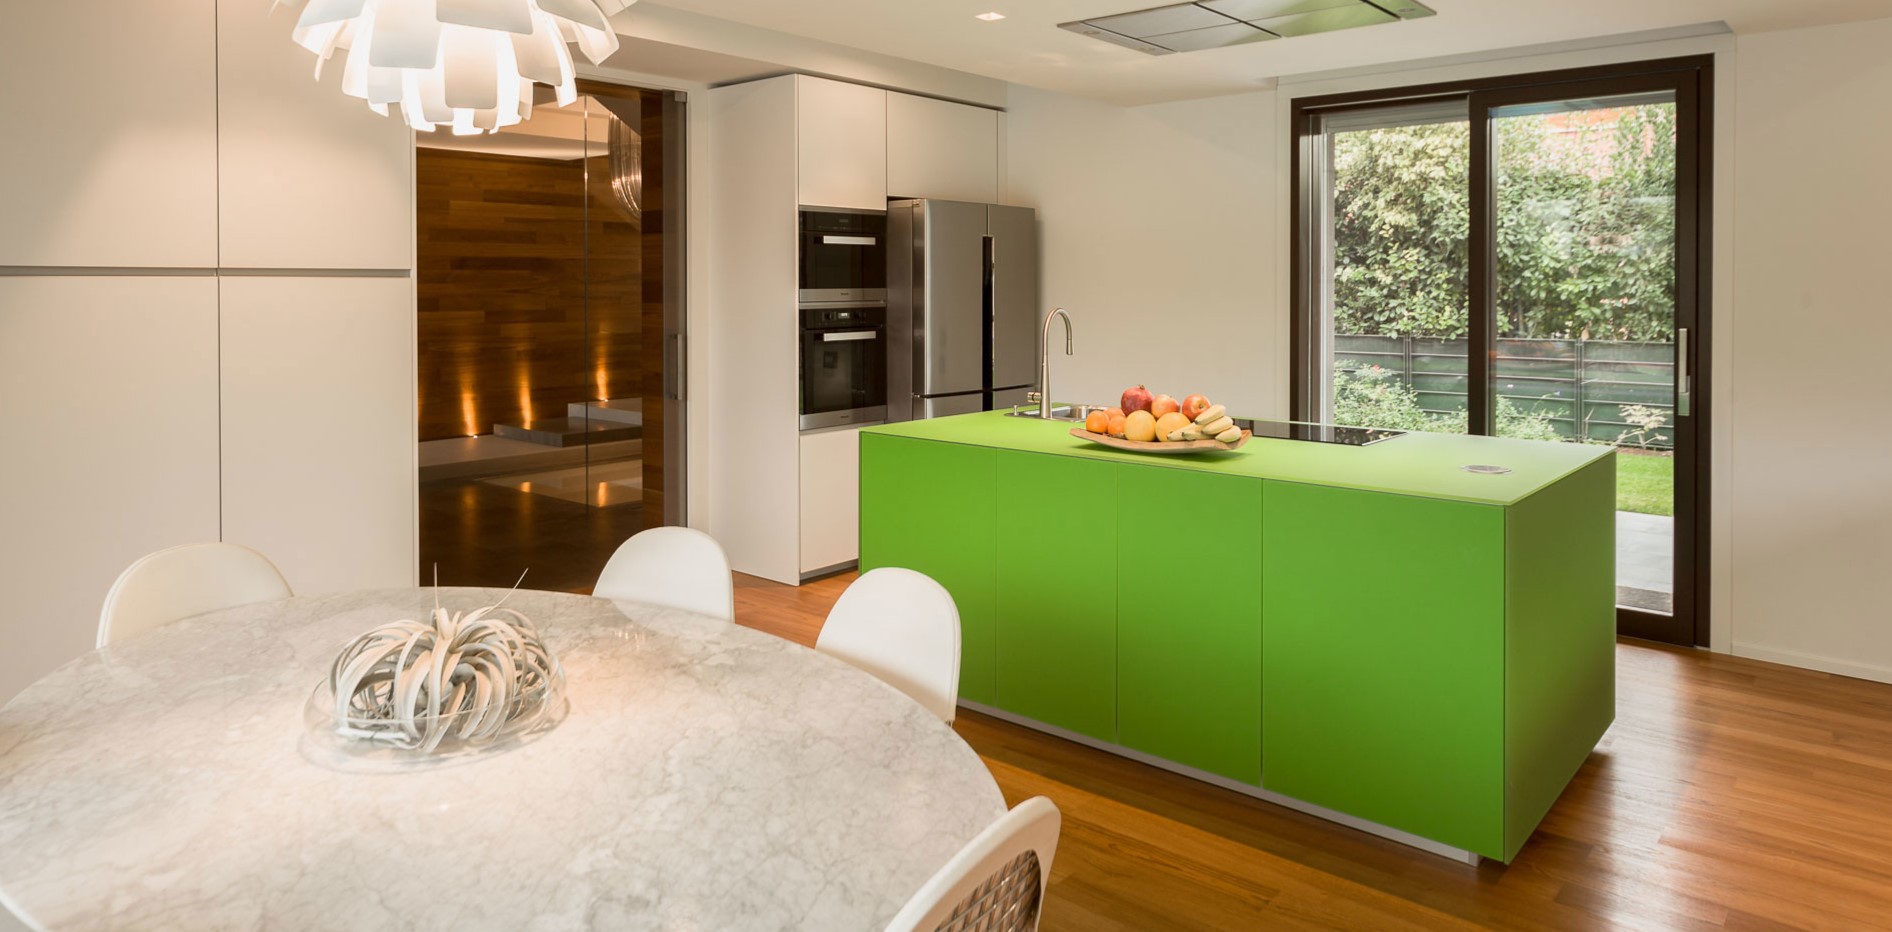 Зеленый кухонный остров является акцентным элементом в интерьере белой кухни